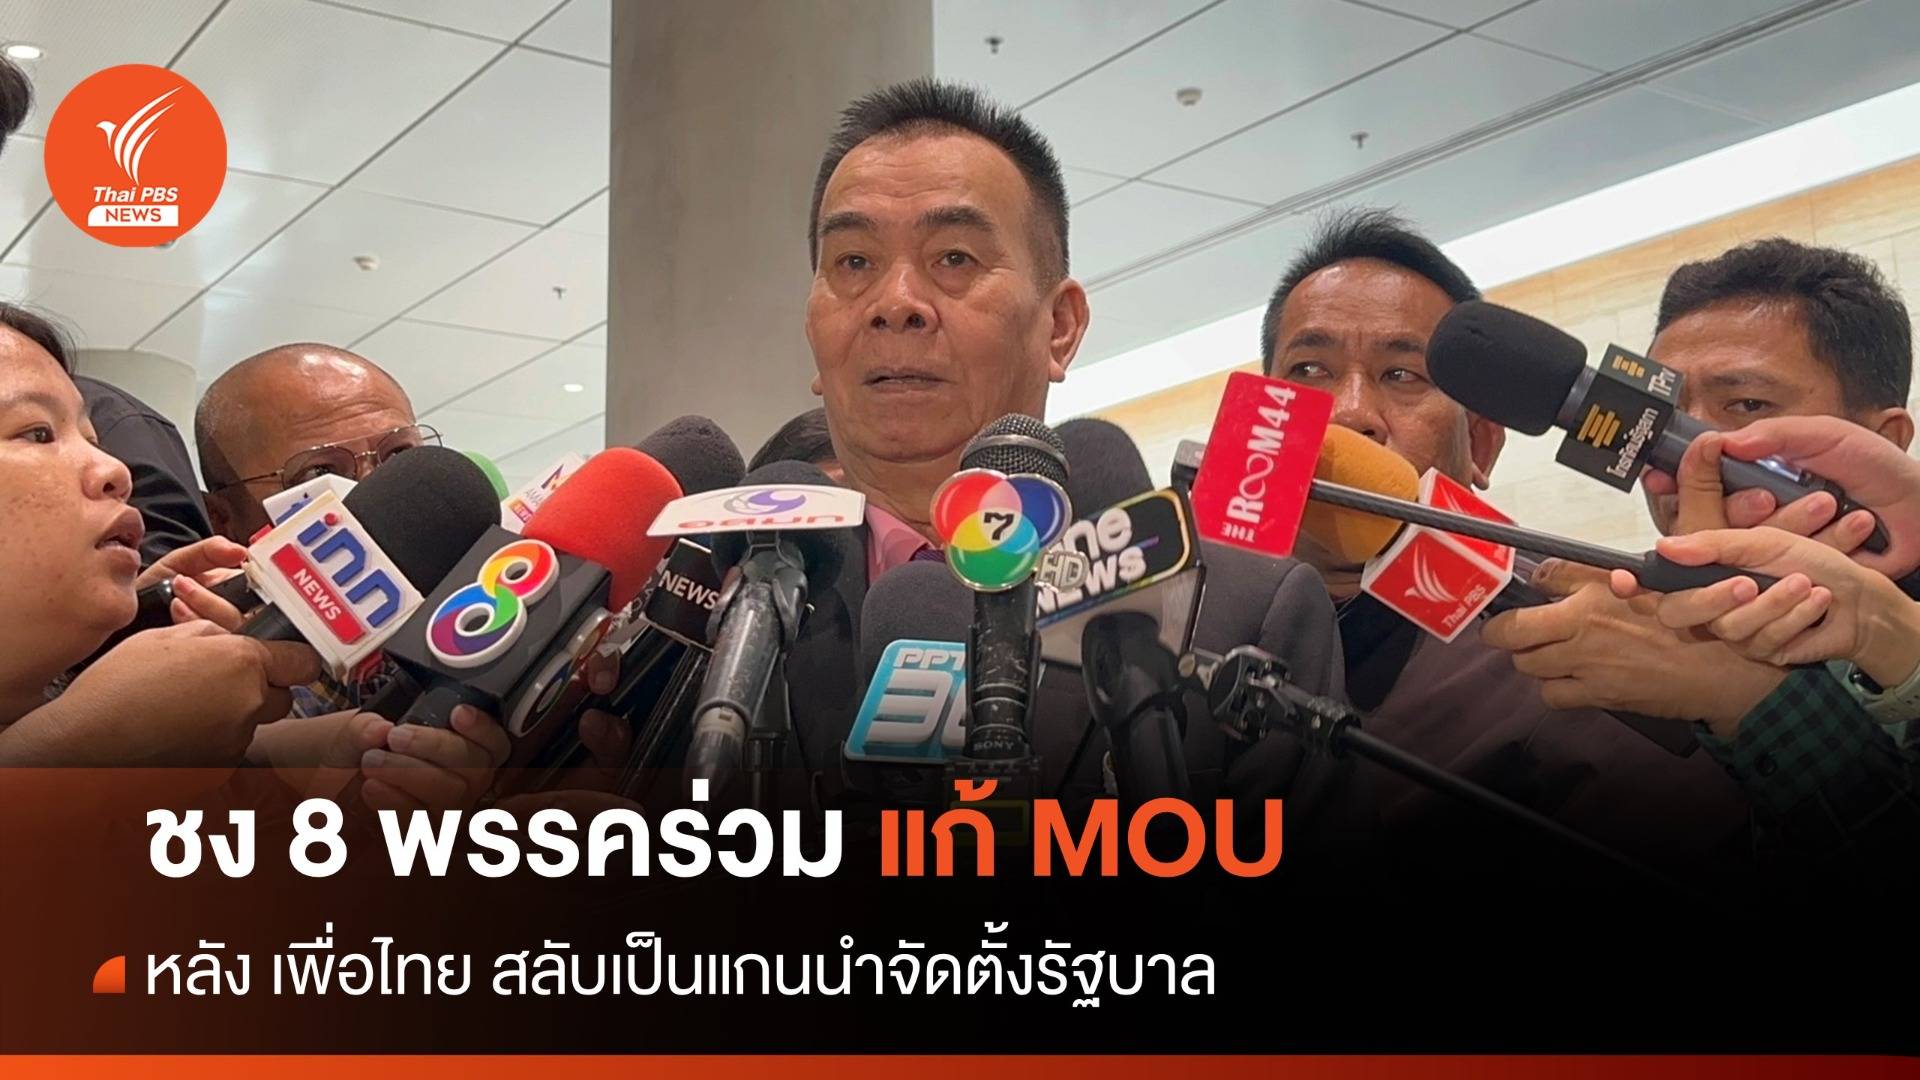 พลังสังคมใหม่ ชง 8 พรรคร่วม แก้ MOU หลัง เพื่อไทย นำจัดตั้งรัฐบาล